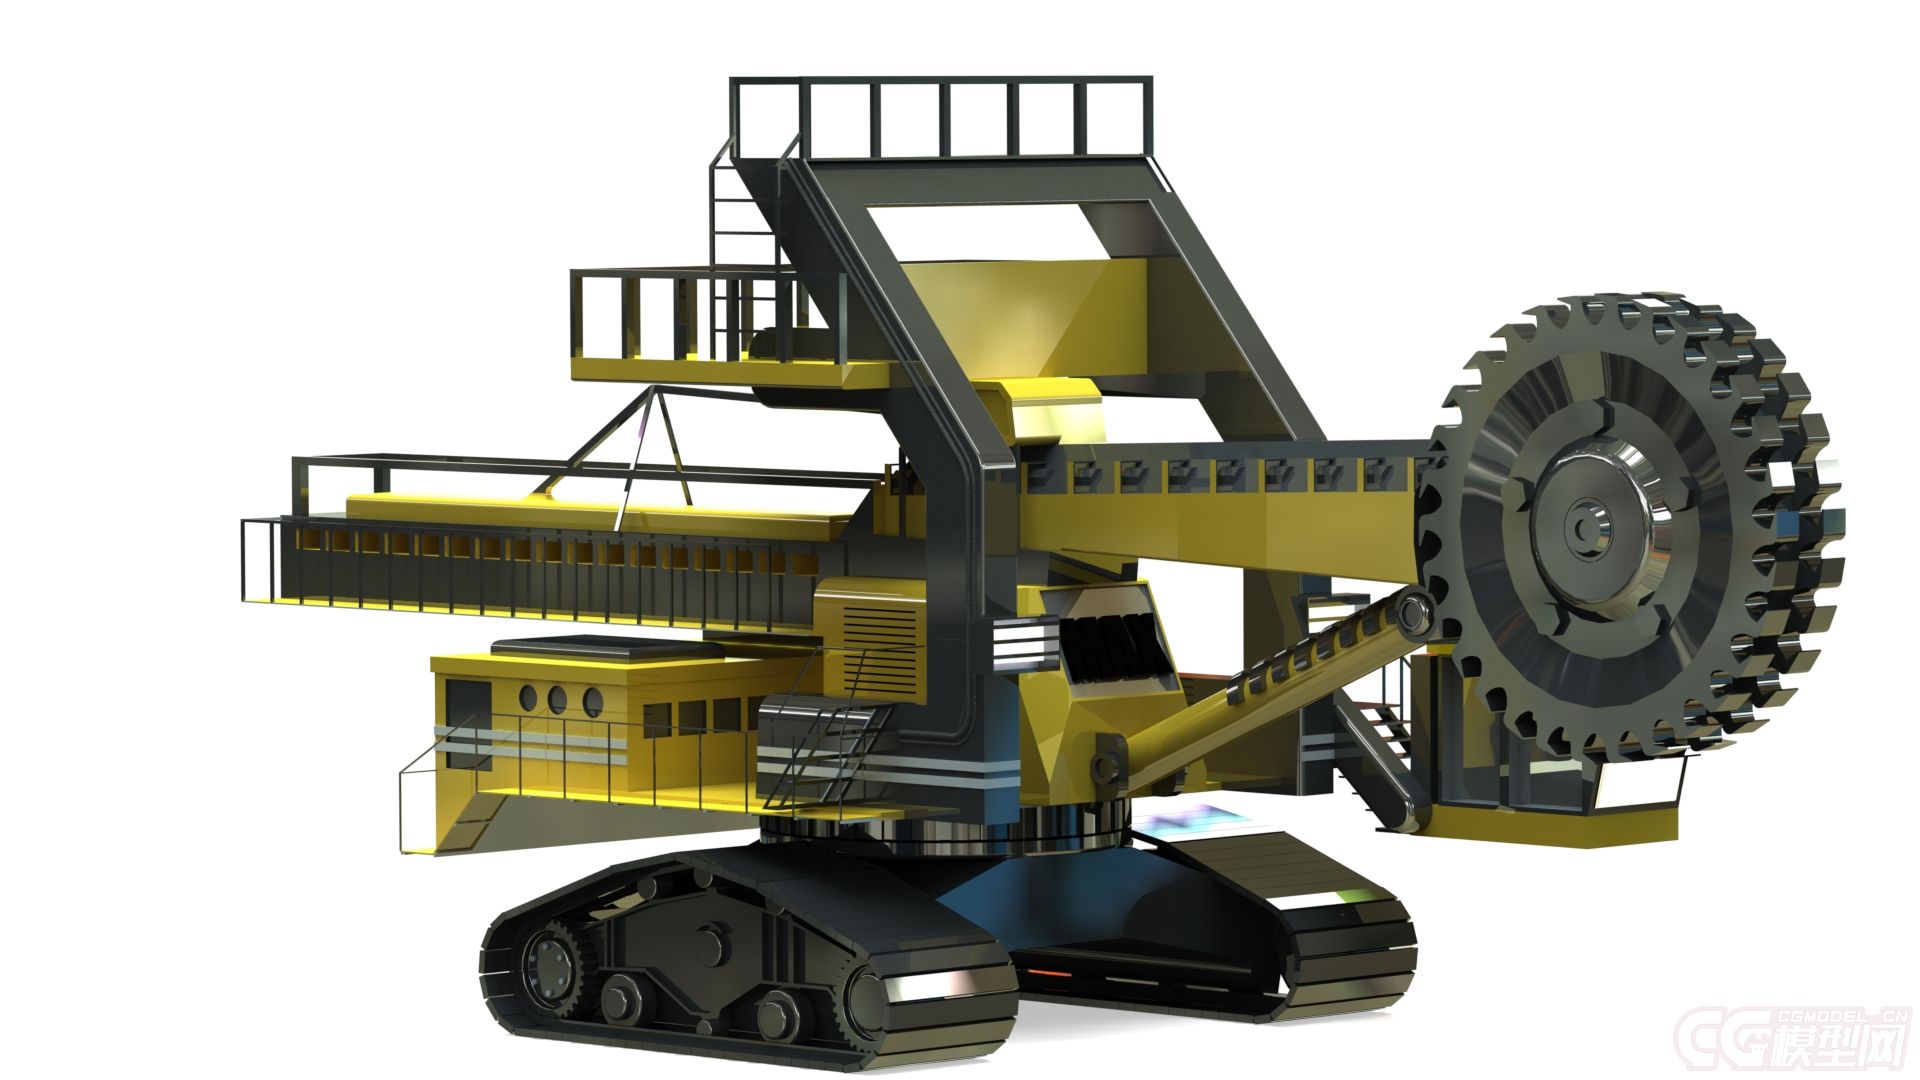 大型采矿挖煤机,超精细模型,结构清晰,合理.提供多种三维格式文件下载